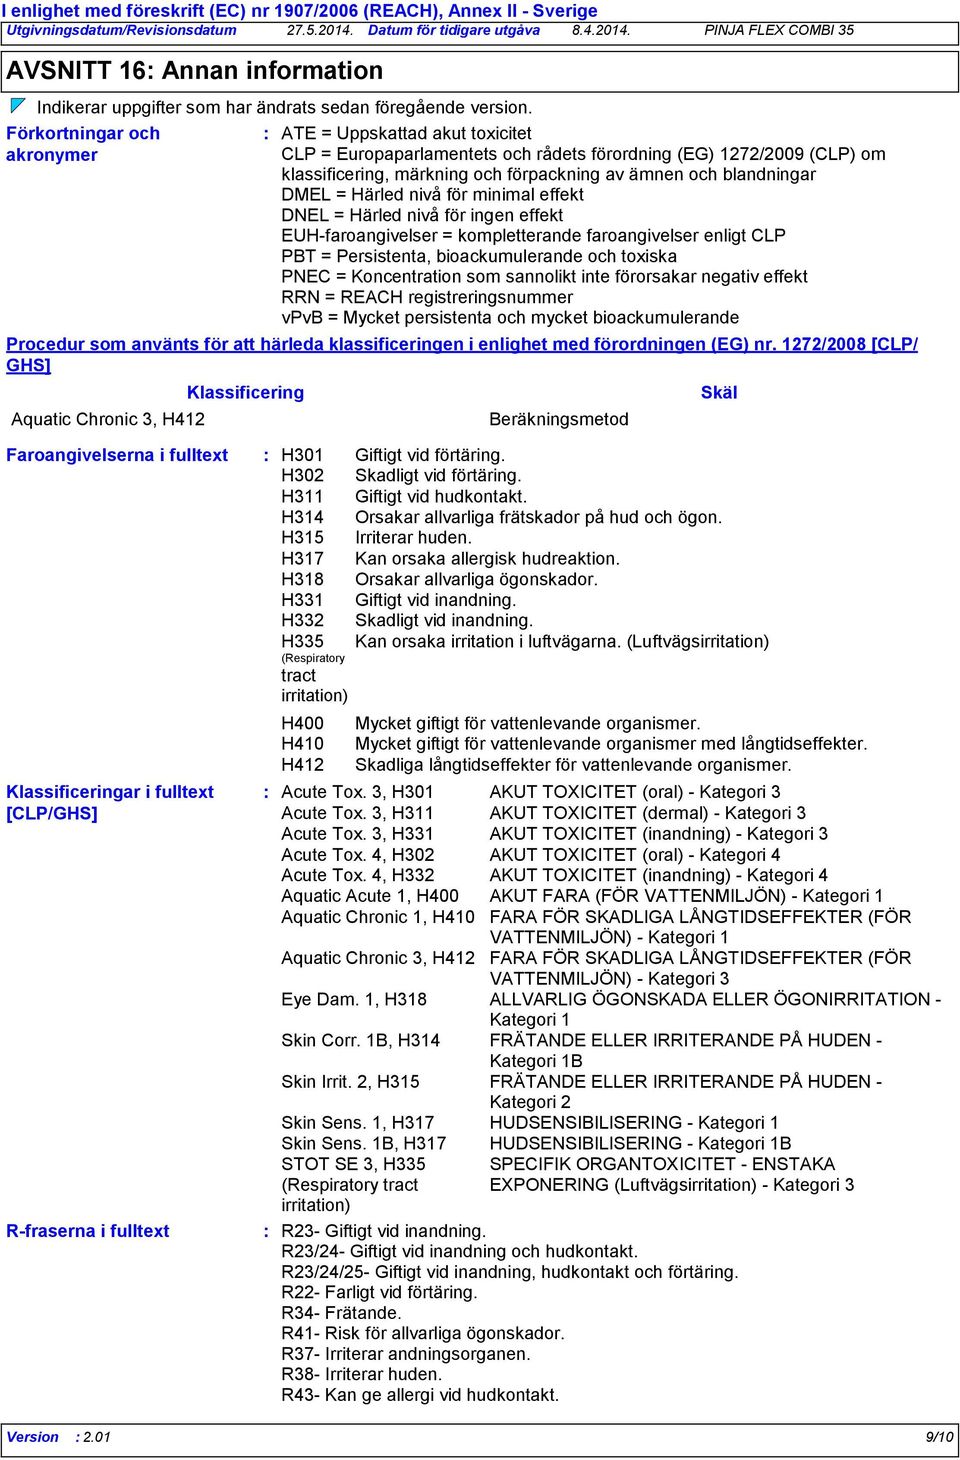 Förkortningar och akronymer ATE = Uppskattad akut toxicitet CLP = Europaparlamentets och rådets förordning (EG) 1272/2009 (CLP) om klassificering, märkning och förpackning av ämnen och blandningar